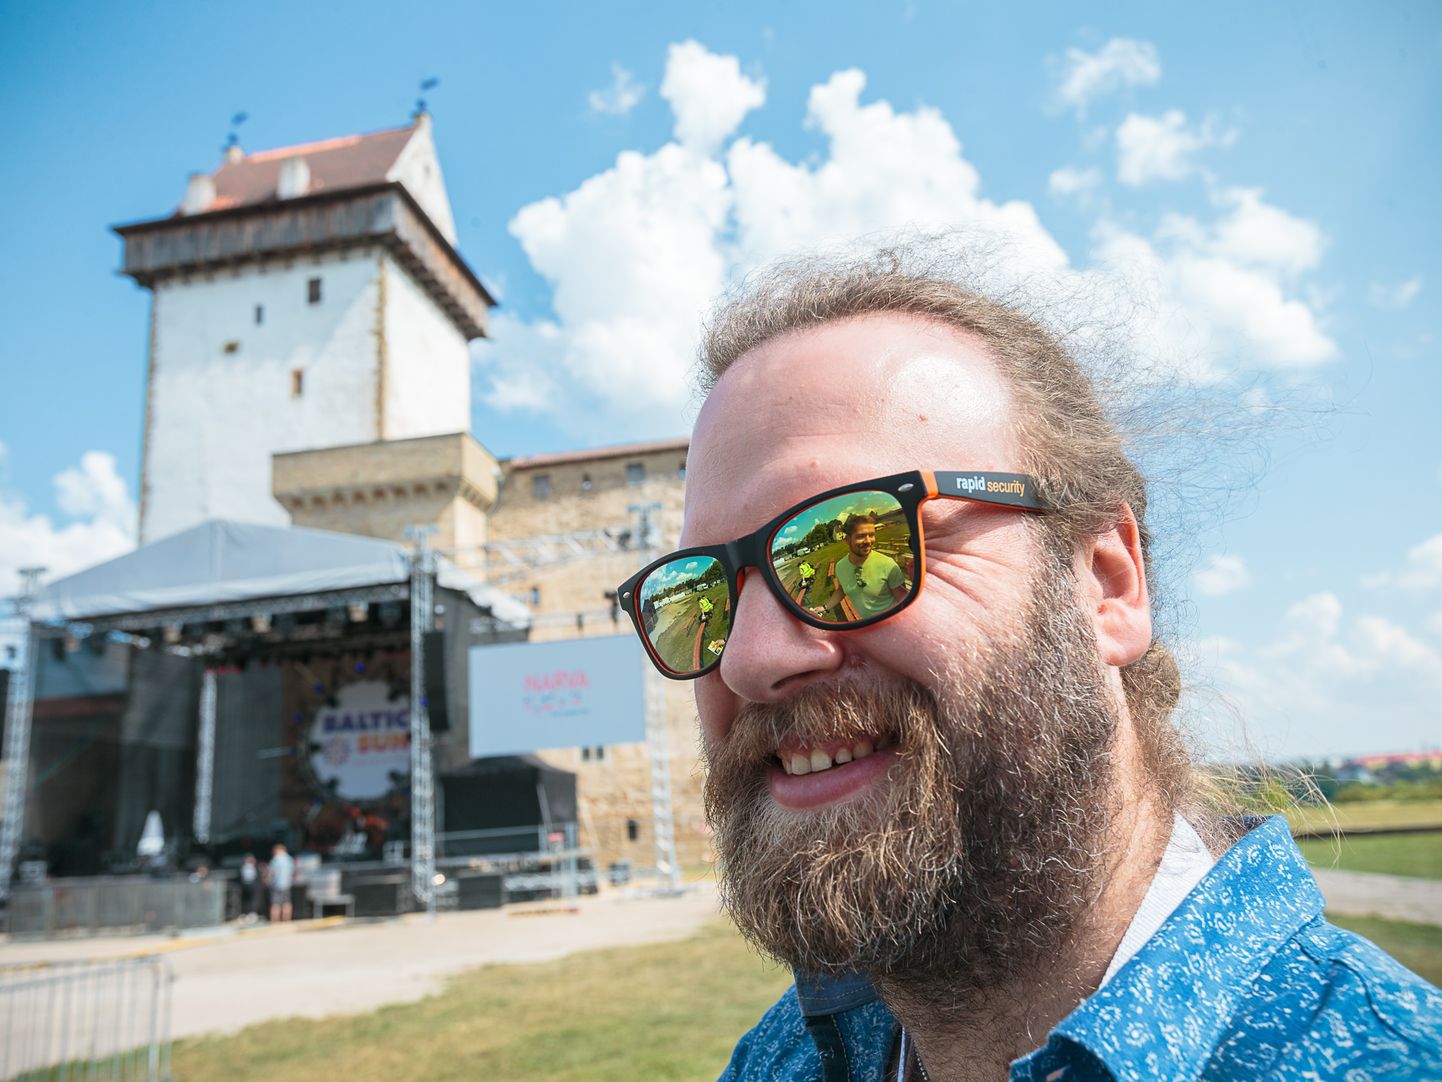 Oleg Pissarenko: "Festival polnud kindlasti läbikukkumine. Pean seda investeeringuks. Järgmist "Baltic Suni" planeerin aastaks 2020 ja seda juba oluliselt targemana ning enam mitte üksi: plaanin kaasata investoreid ja kaaskorraldajaid."